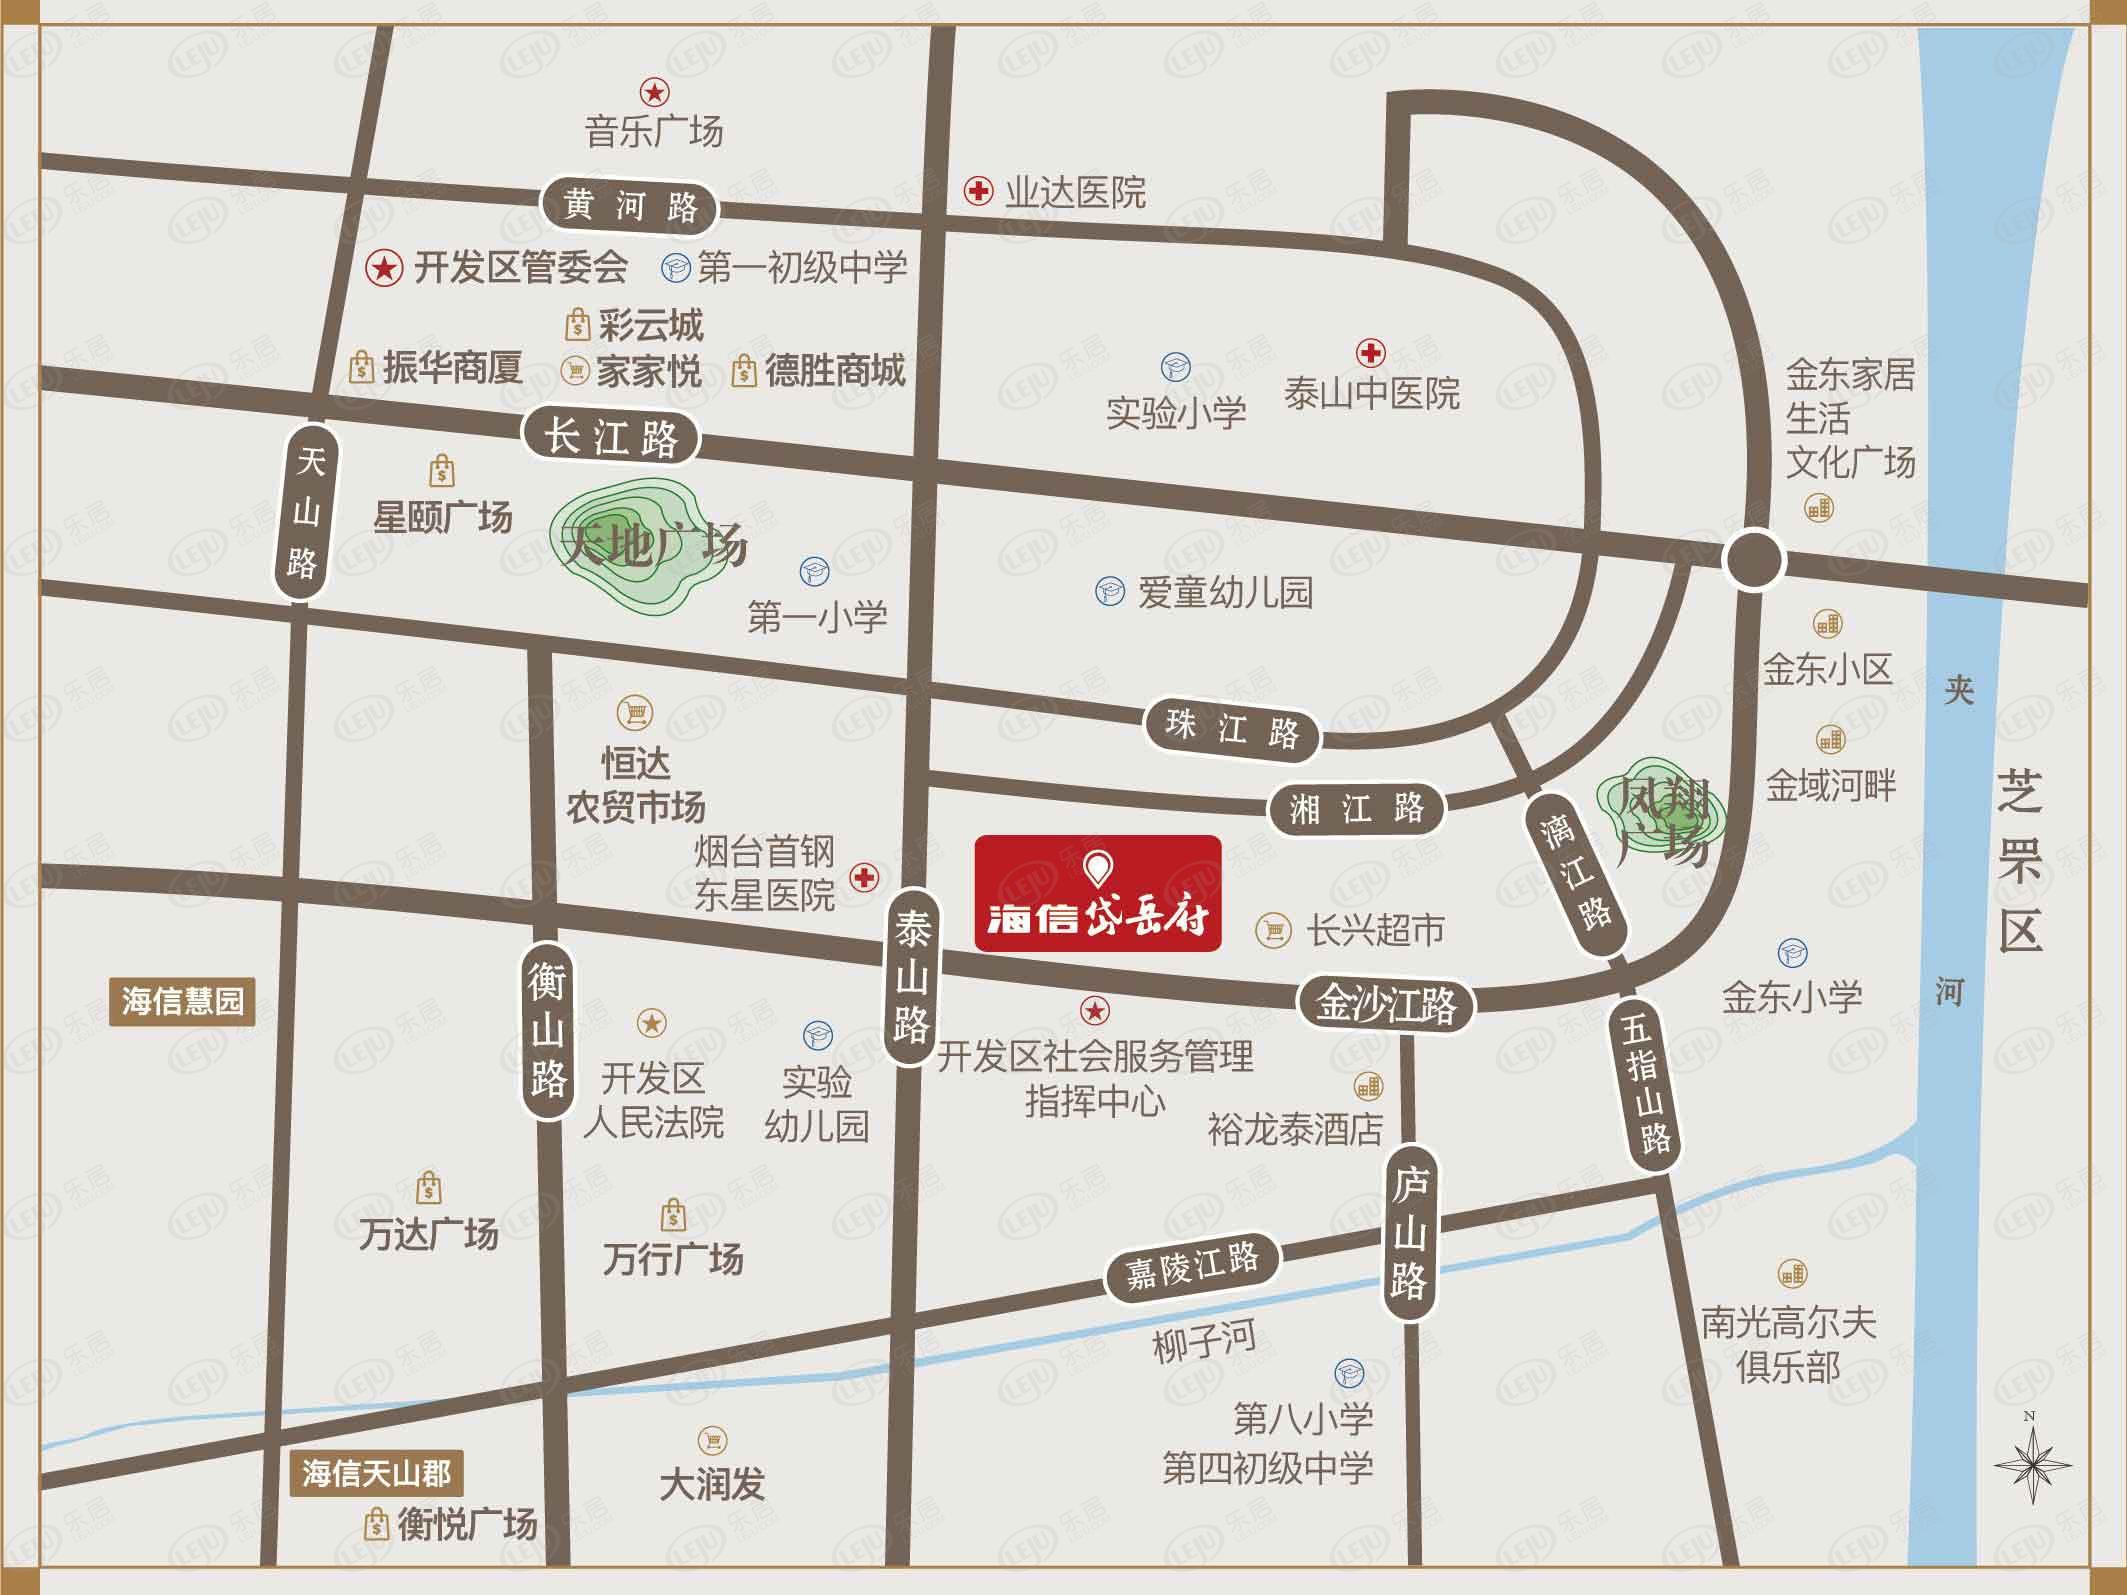 福山海信岱岳府，坐落于开发区东部繁华区域隶属于长江路中心板块，价格为15000/平米左右。